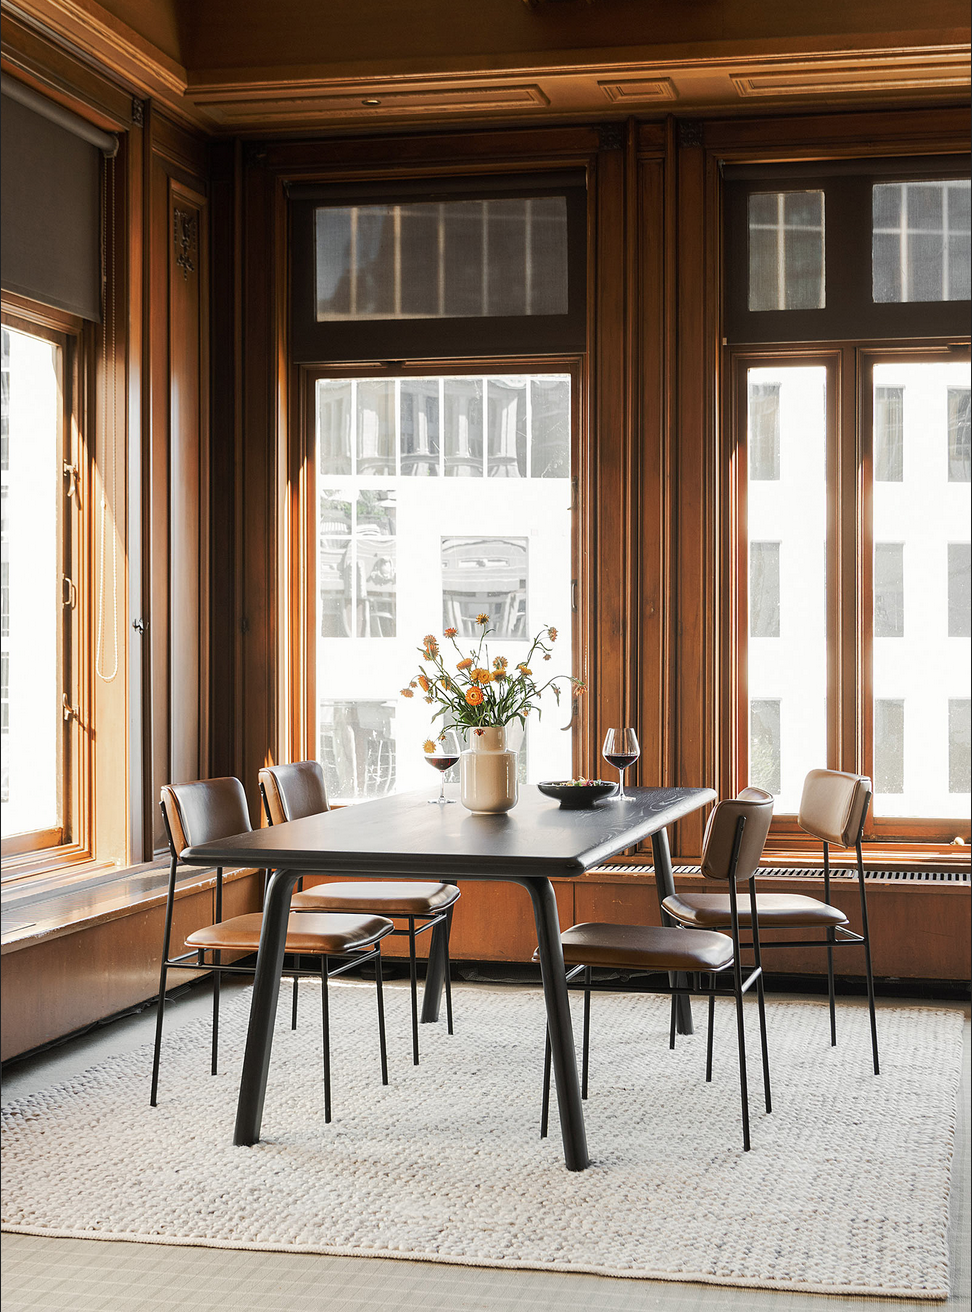 Salle à manger à plafond haut et grandes fenêtres en boiseries foncées, table rectangulaire en bois et chaises rétro en cuir brun, tapis texturé